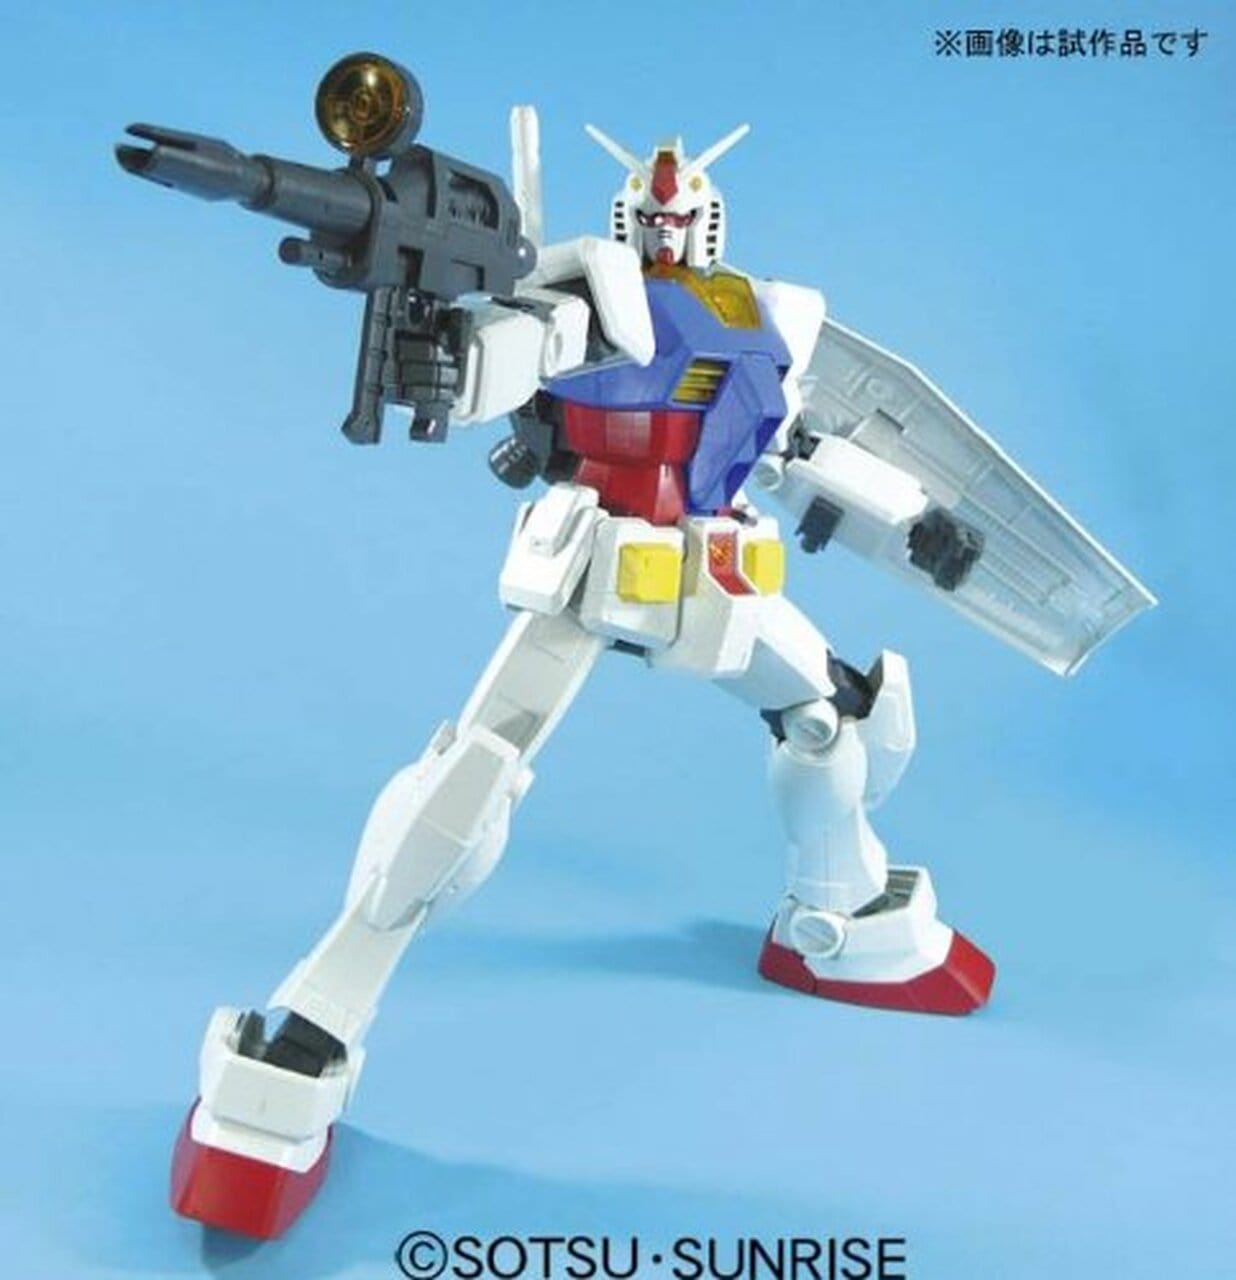 Bandai Hobby 1/48 Mega Size Gundam RX-78-2 Build and Review 